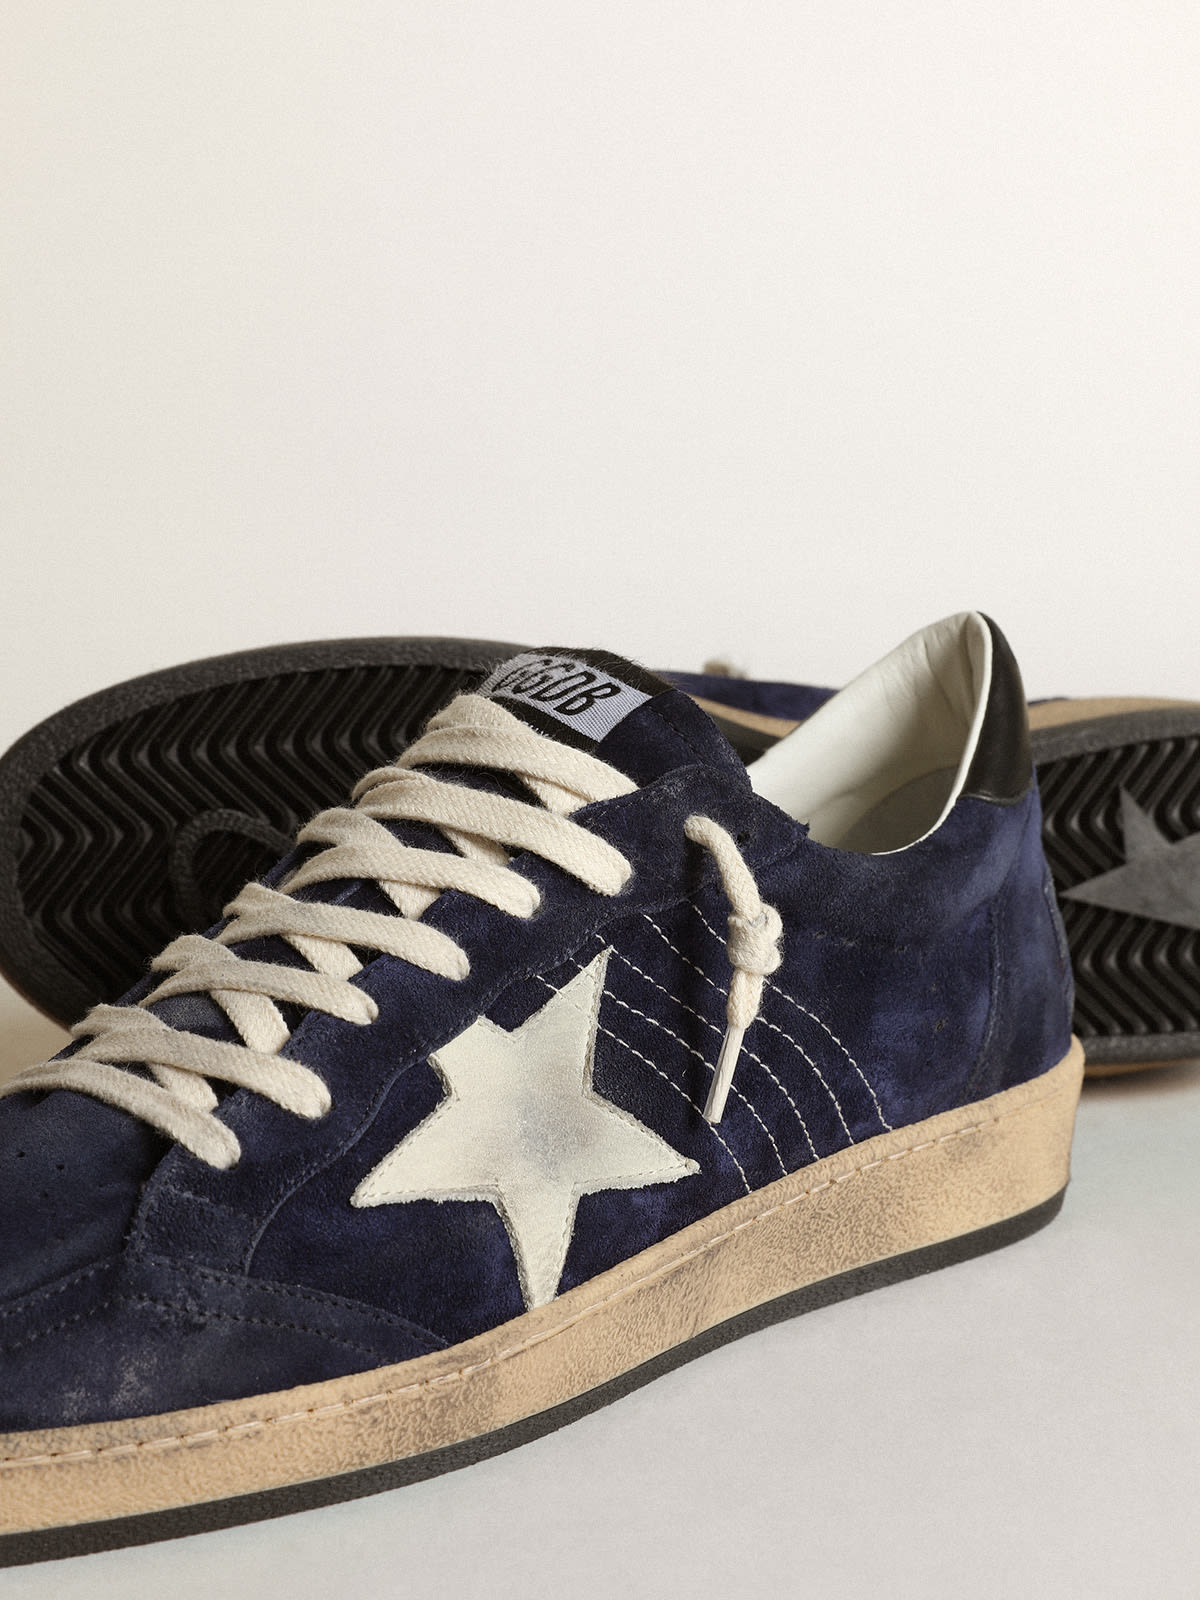 Golden Goose - Sneakers Ball Star en daim bleu foncé avec étoile en cuir nubuck blanc cassé et contrefort en cuir nappa noir in 